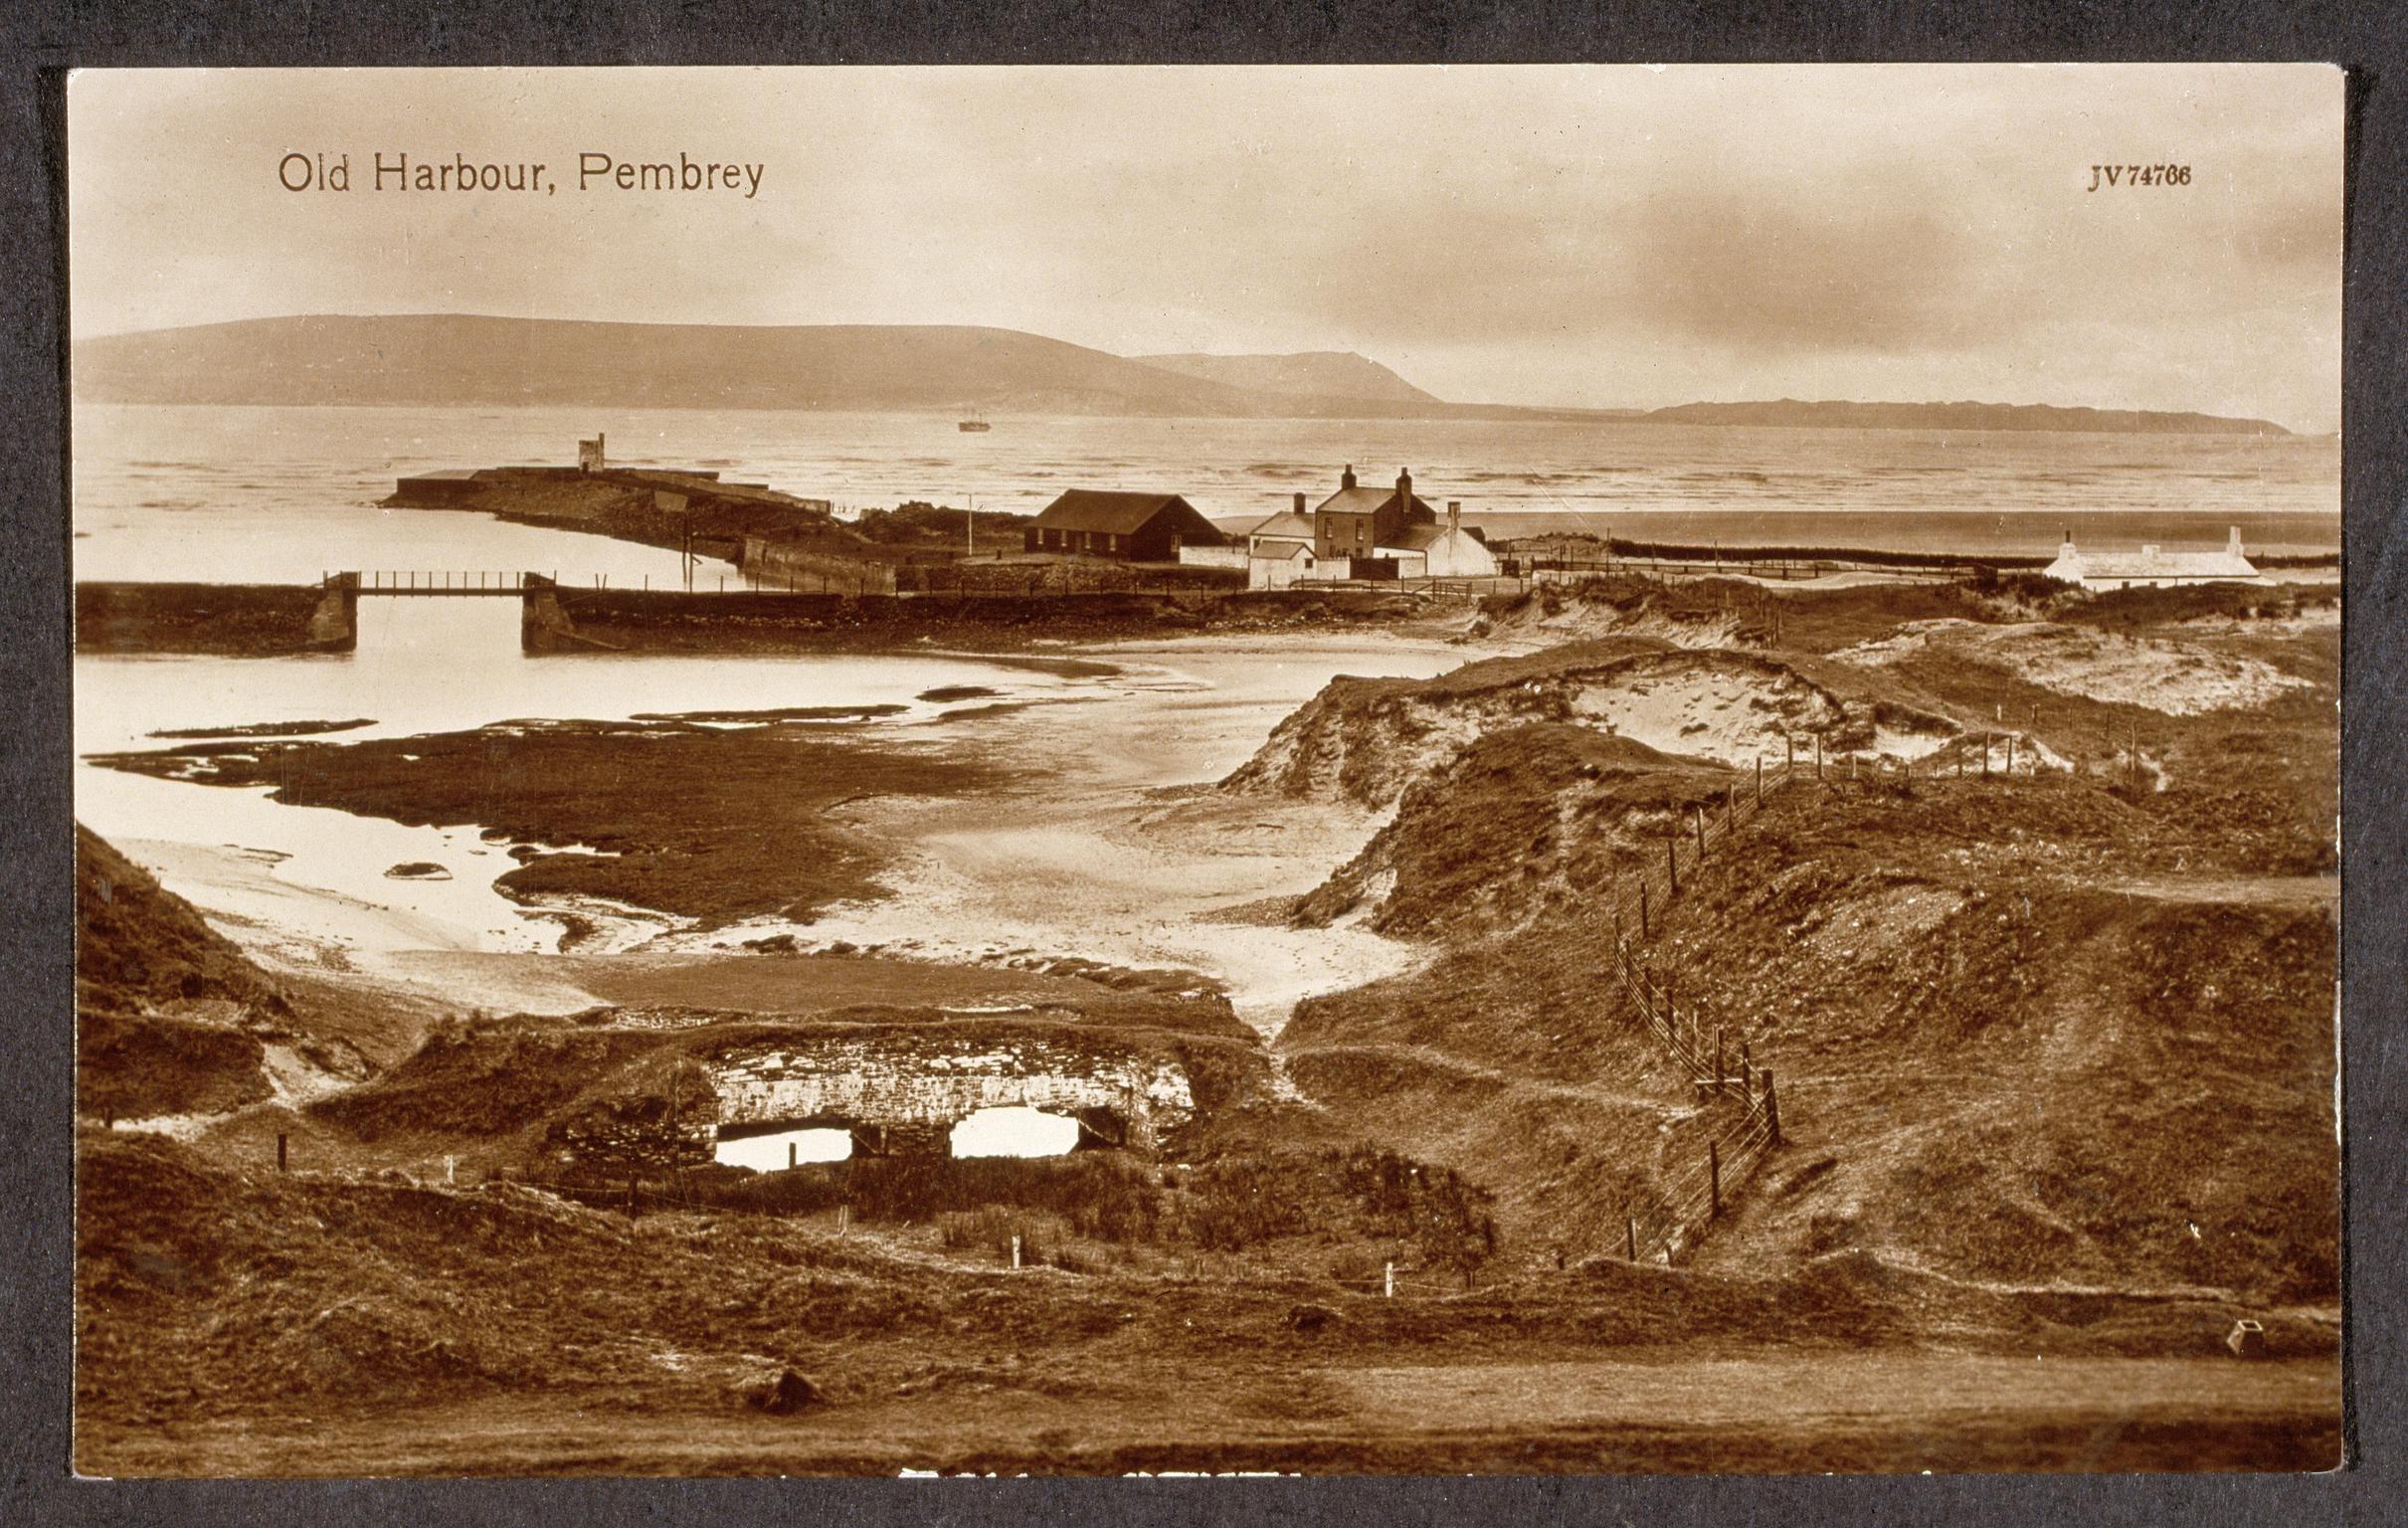 Old Harbour, Pembrey (postcard)